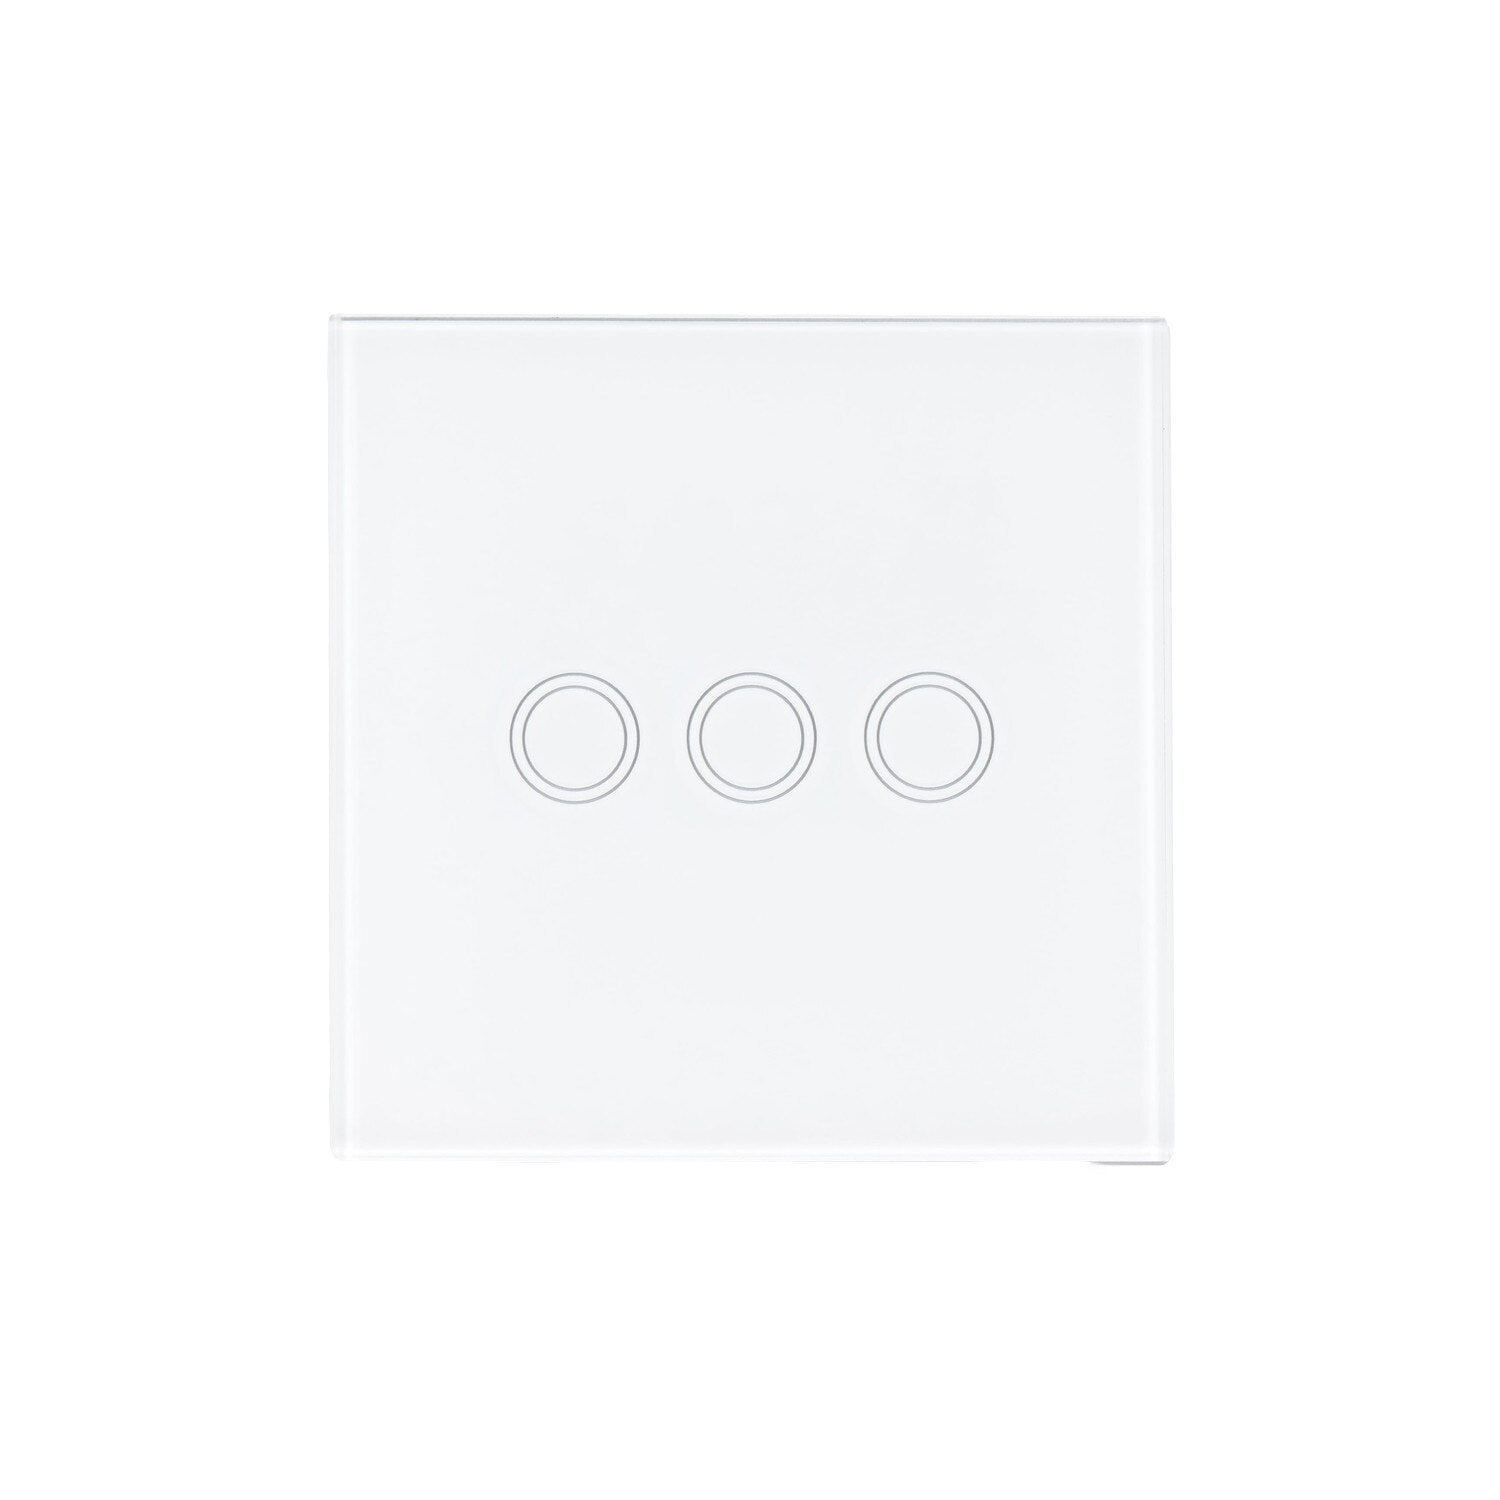 Intrerupator triplu cu touch, Zola®, butoane iluminate, panou sticla, 8.6x8.6x3.3 cm, alb